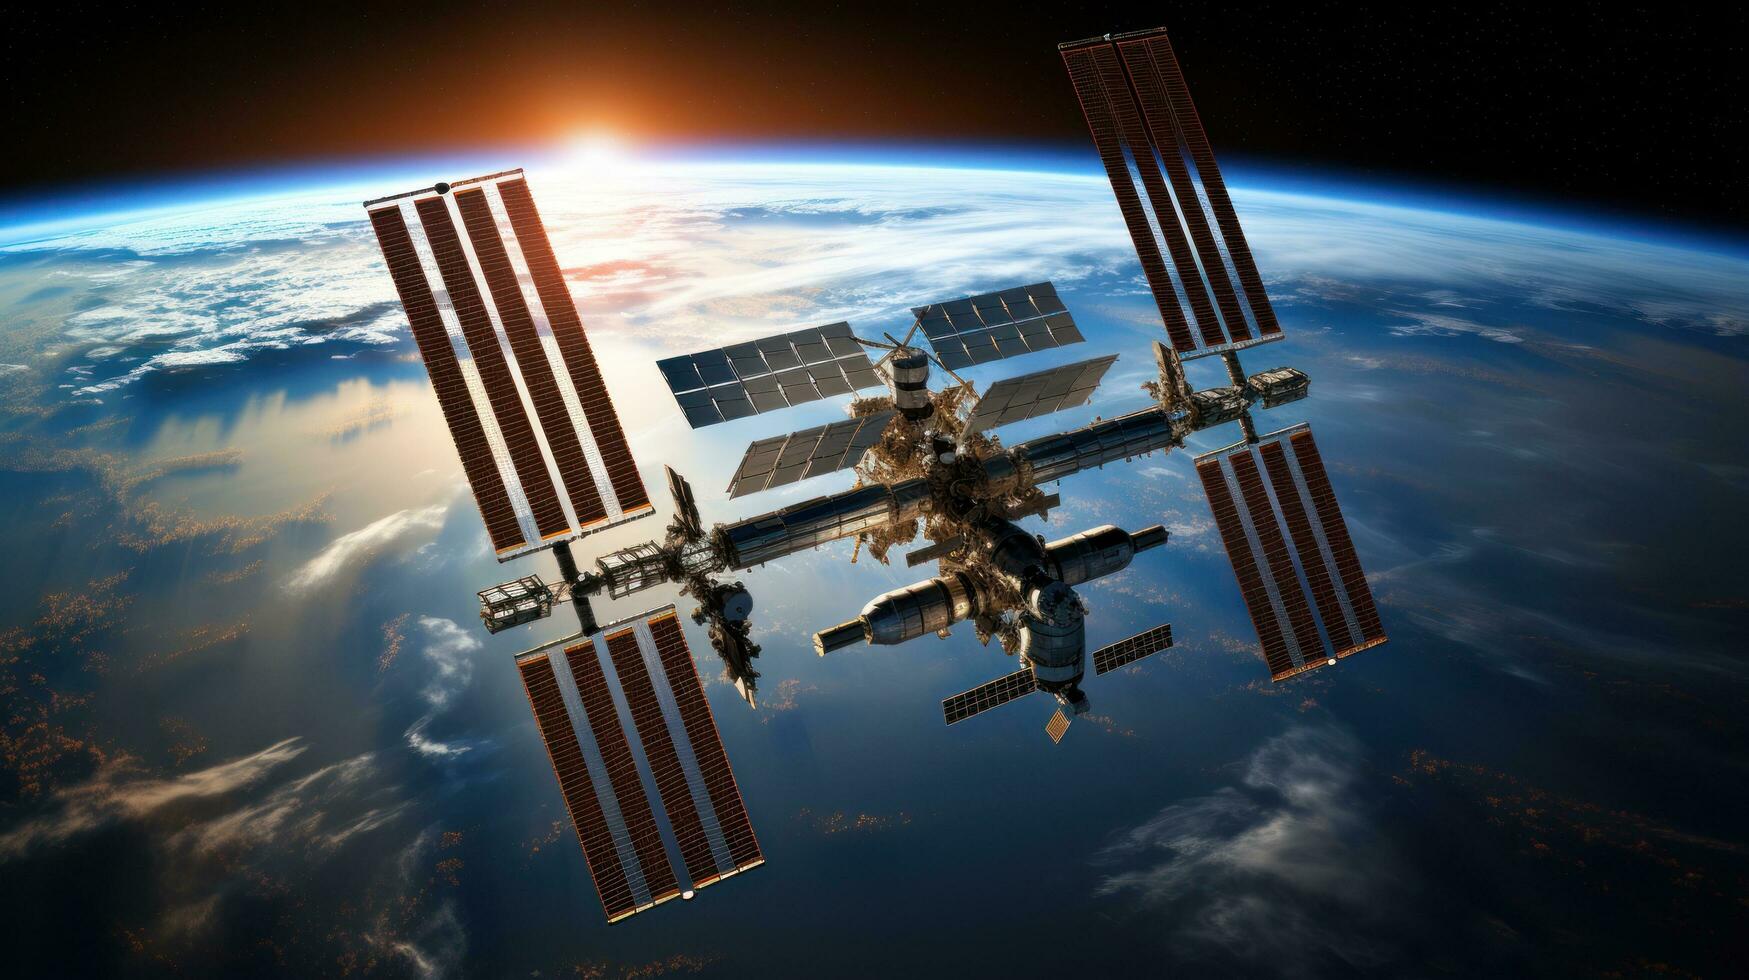 Internationale ruimte station in een baan om de aarde bovenstaand aarde foto